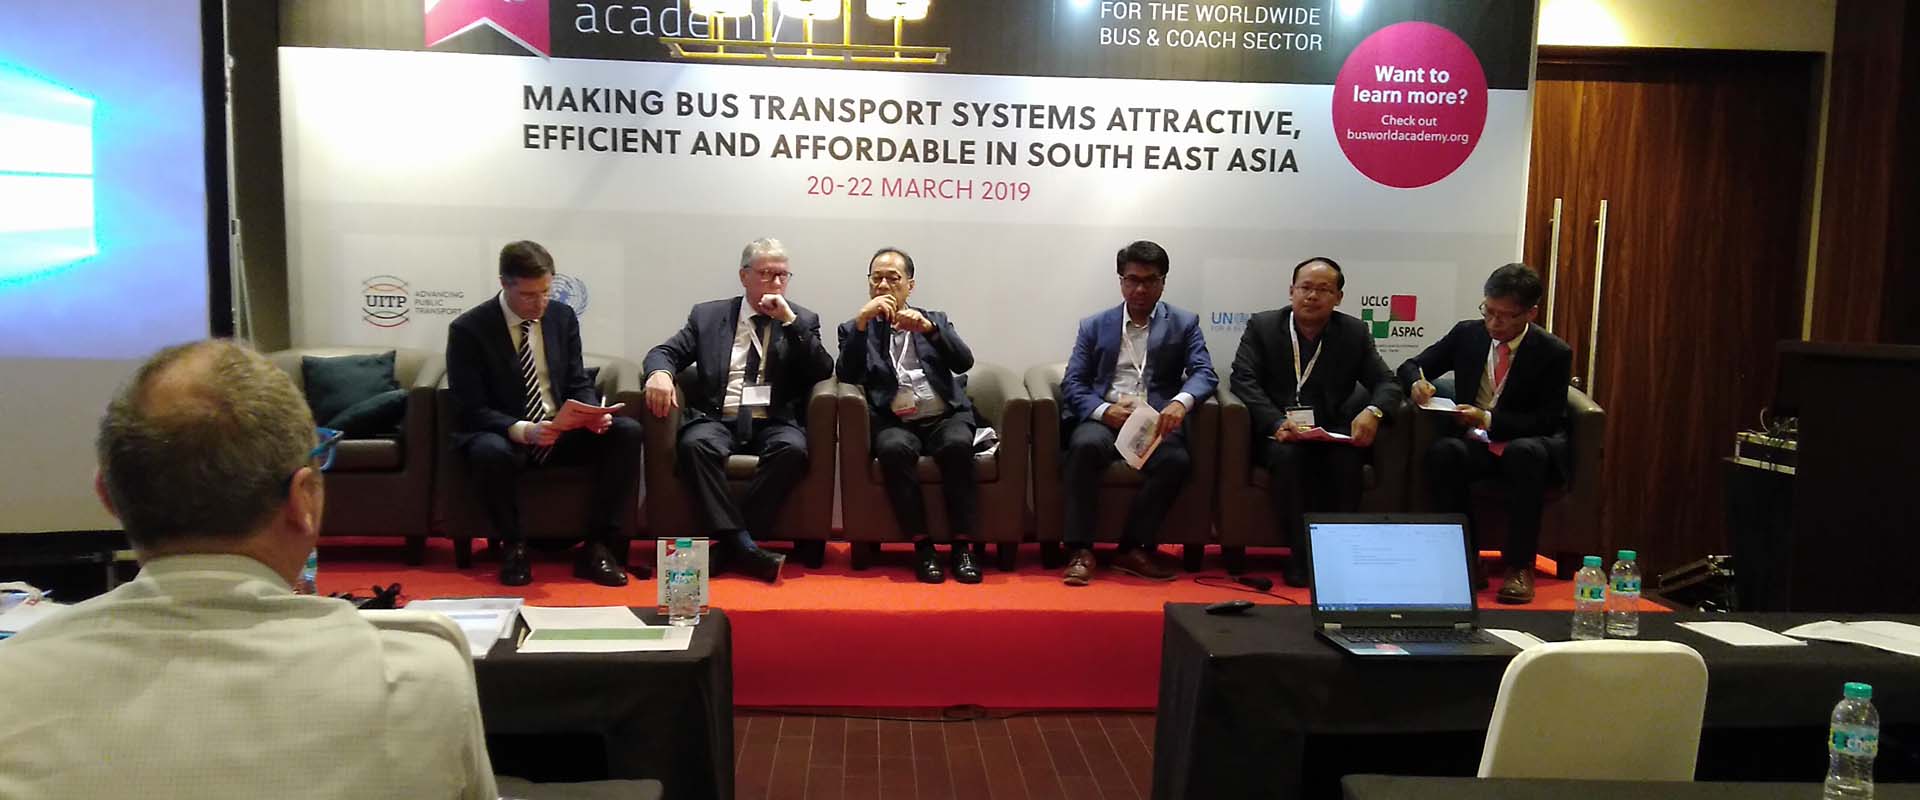 Forum Walikota: Mengembangkan Transportasi yang Berkelanjutan di Kota-kota Asia Tenggara